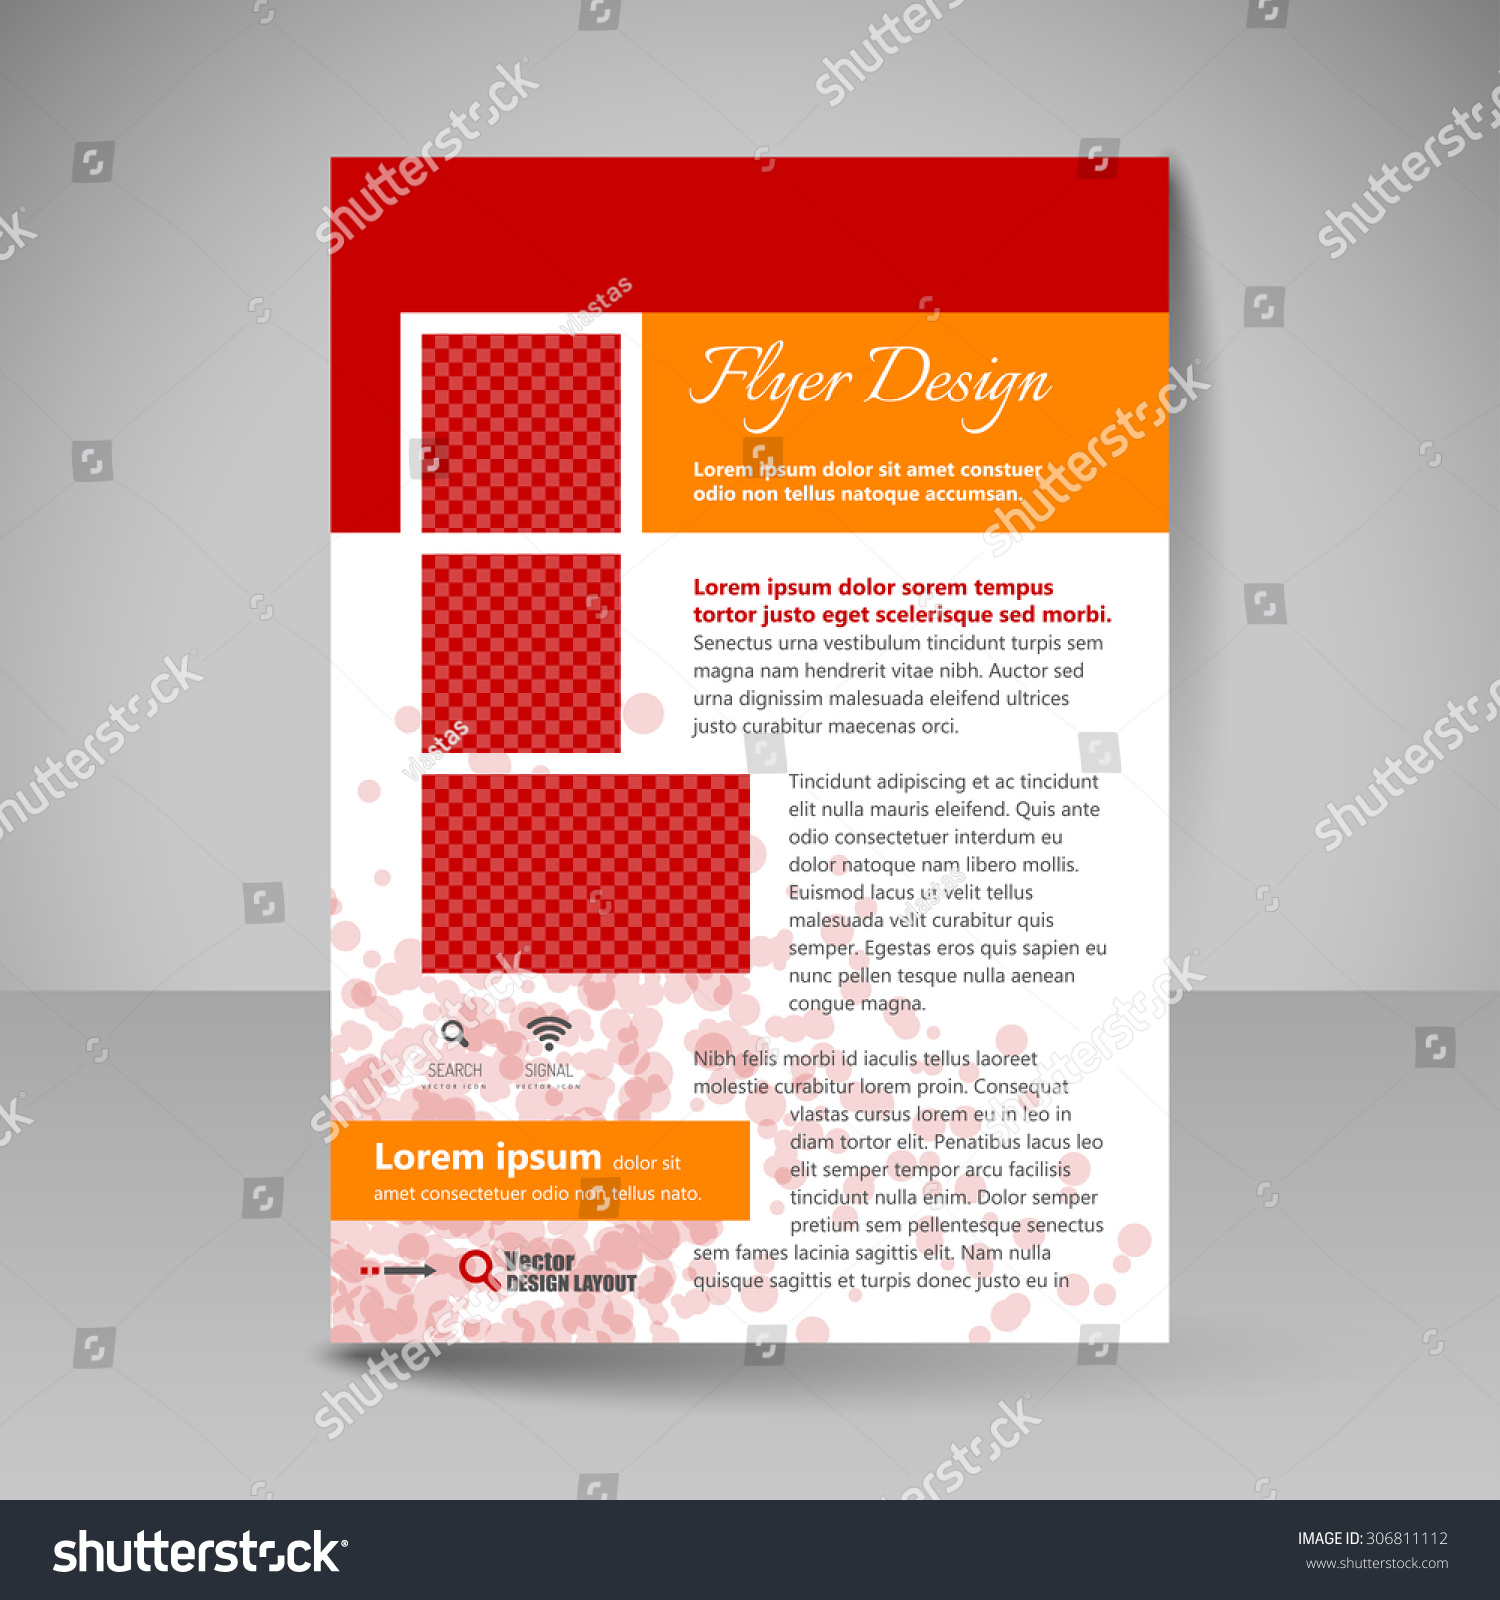 Edit Vectors Free Online - Flyer design. | Shutterstock Editor